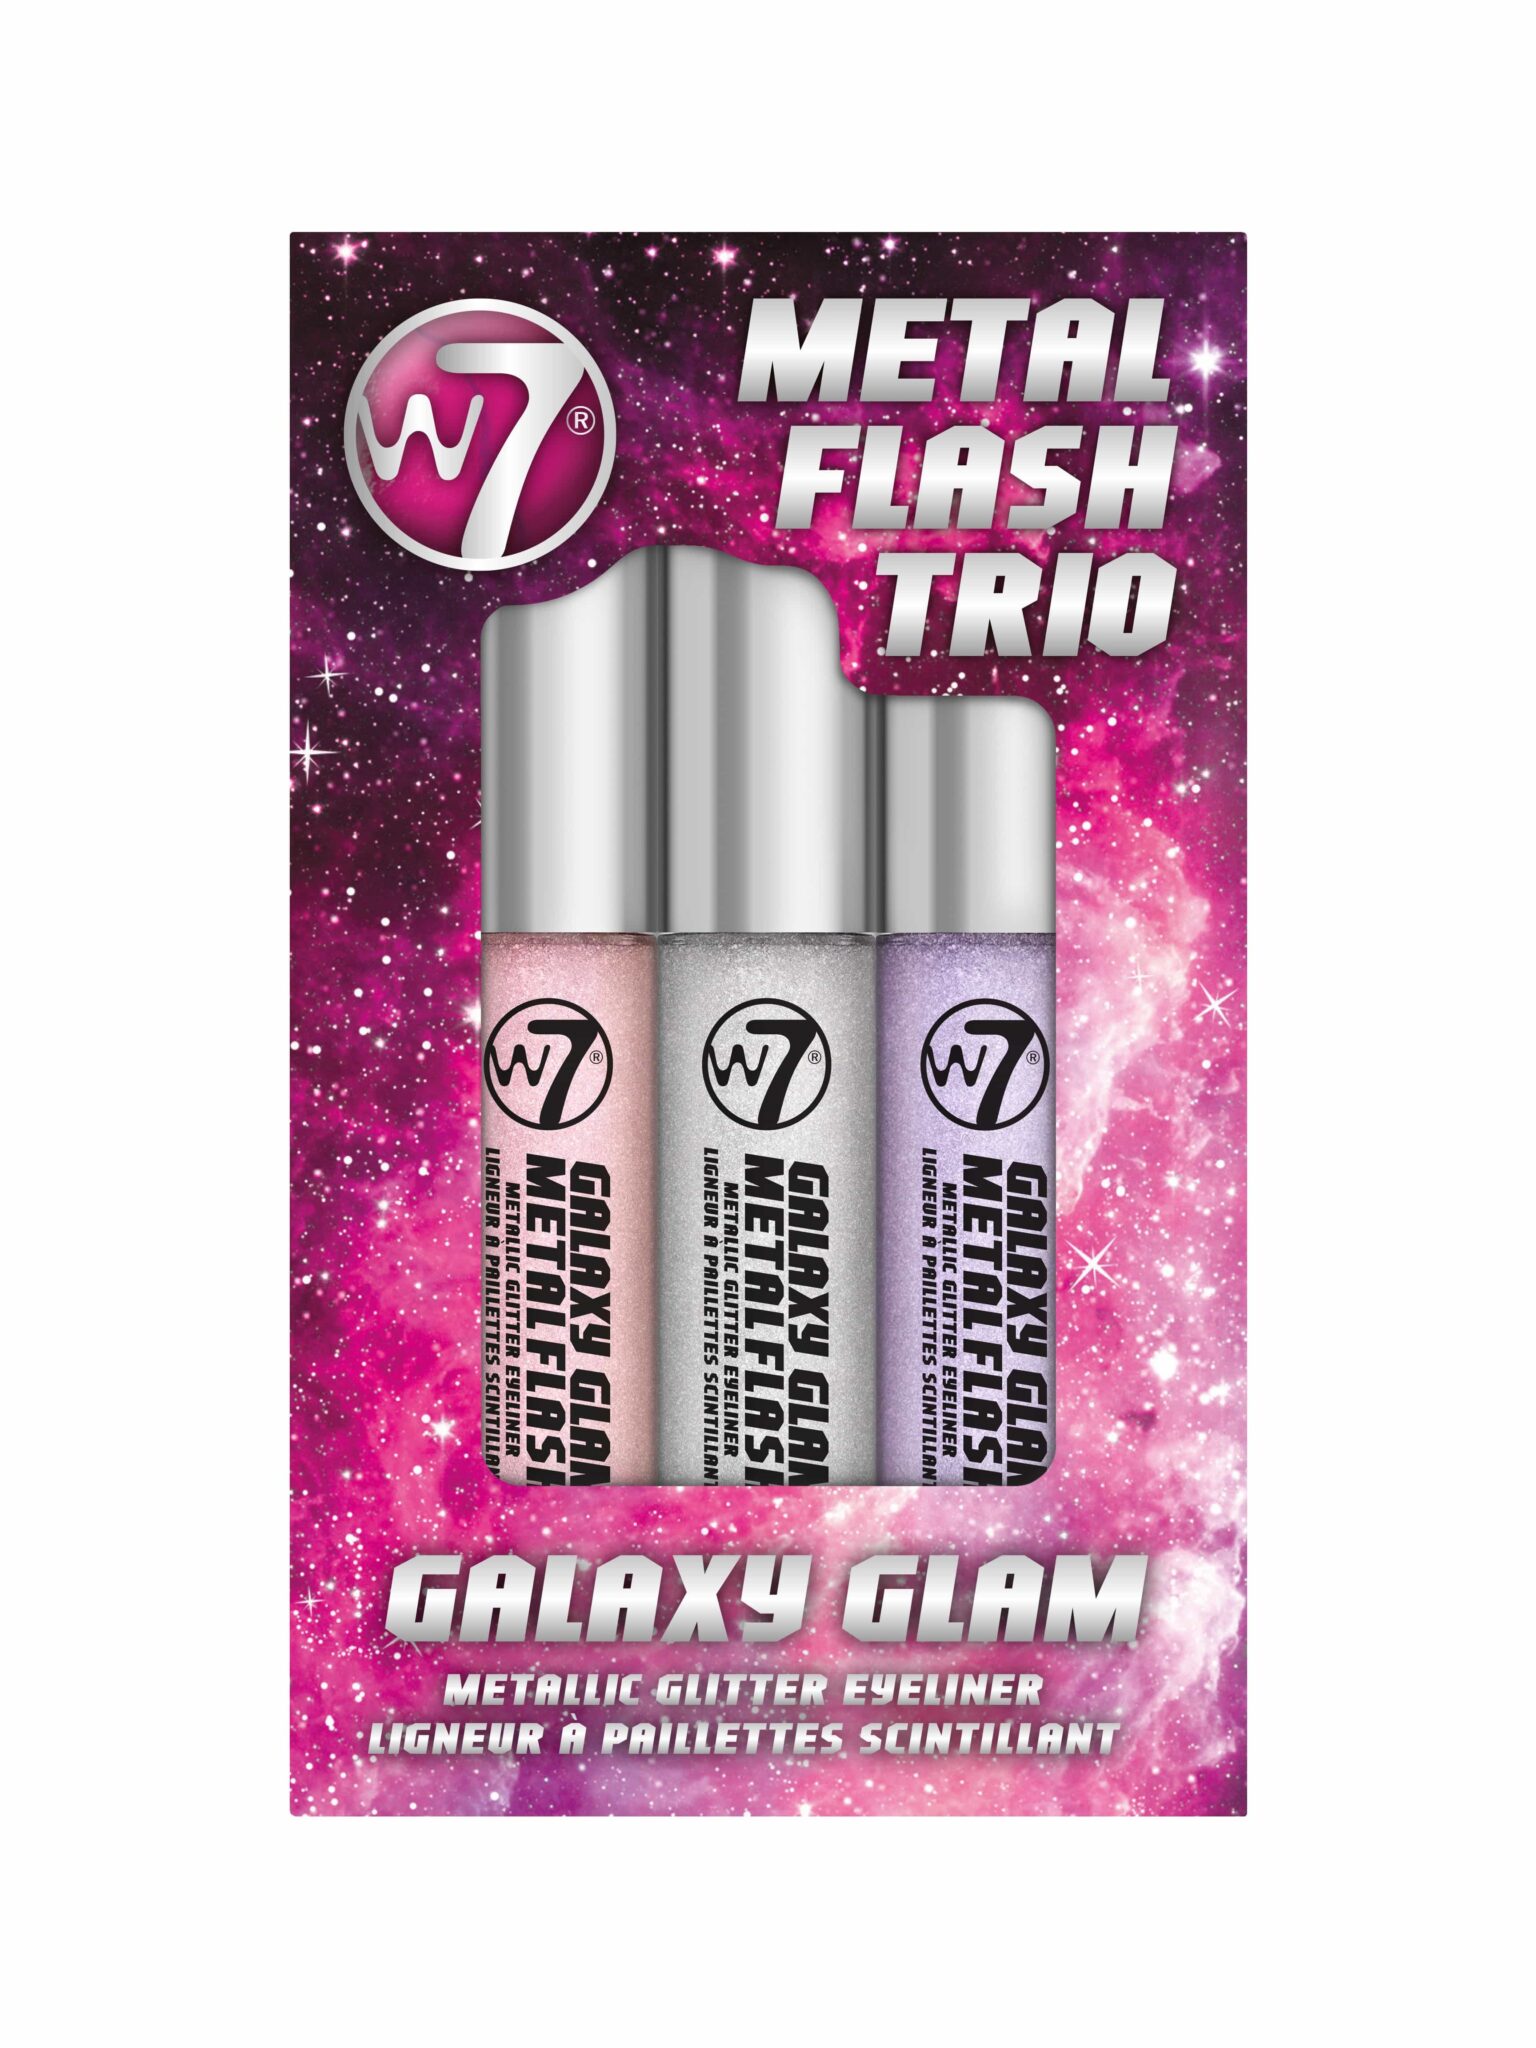 W7 metal flash trio glitter eyeliner galaxy glam